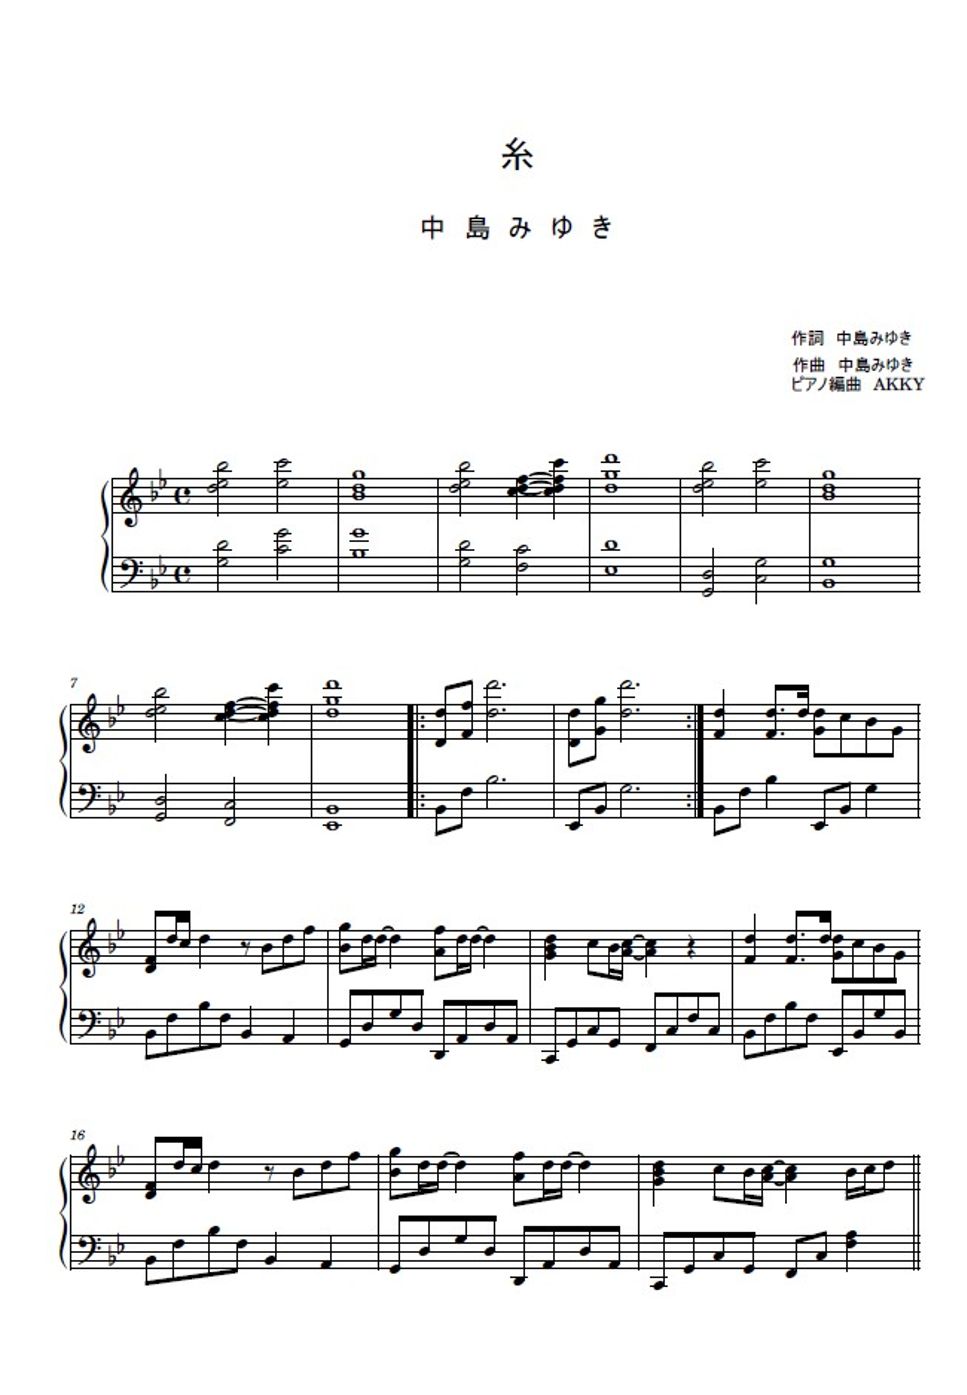 中島みゆき - 糸 (ピアノソロ / 中島みゆき) by AKKY